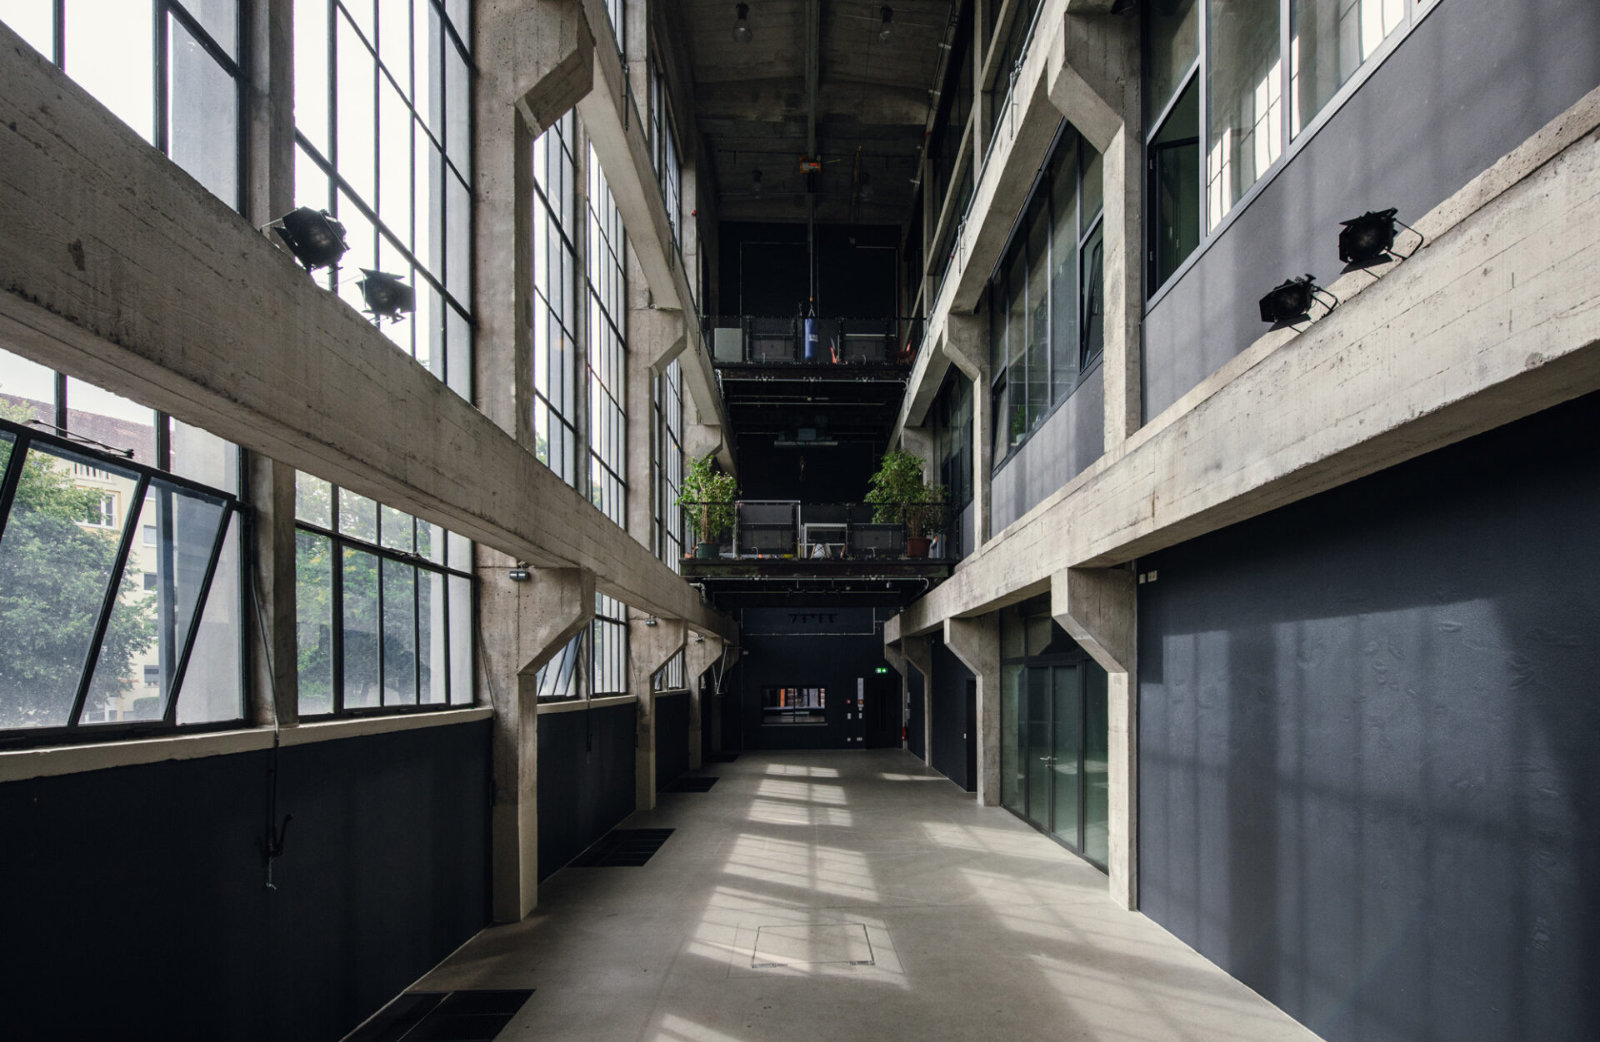 Foto: Industrieller Veranstaltungsraum mit hohen Decken, großen Fenstern und Betonwänden.